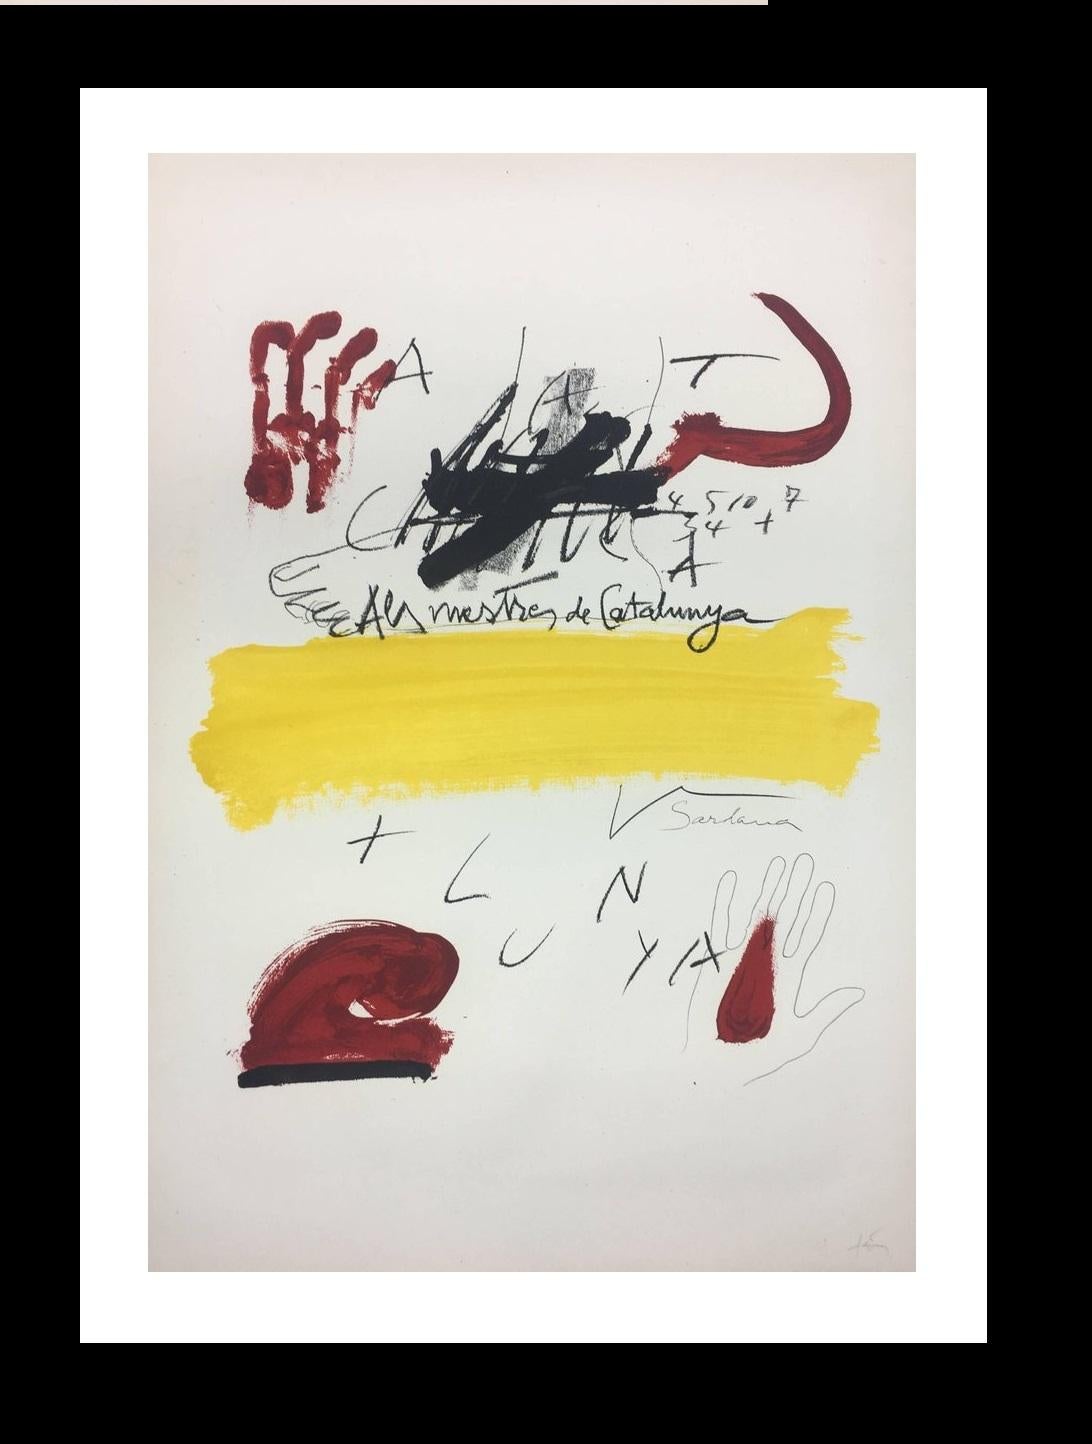 Abstract Print Antoni Tàpies - Tapies 118  Fond blanc  rouges et jaunes  Catalogne.  lithographie originale